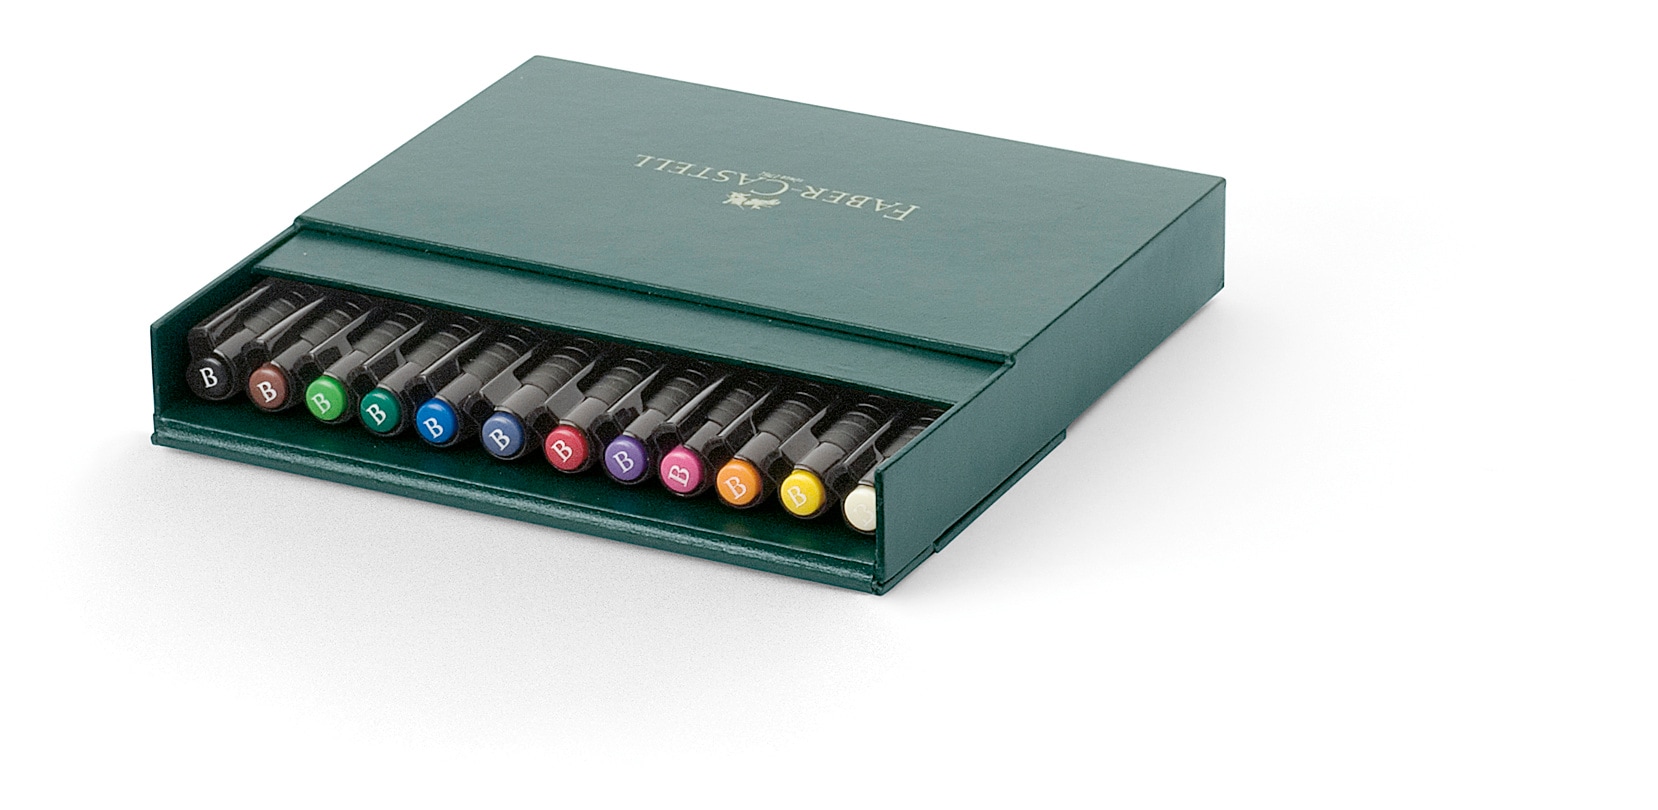 Faber-Castell Pitt Artist Brush Pen - Set of 12 - Bright